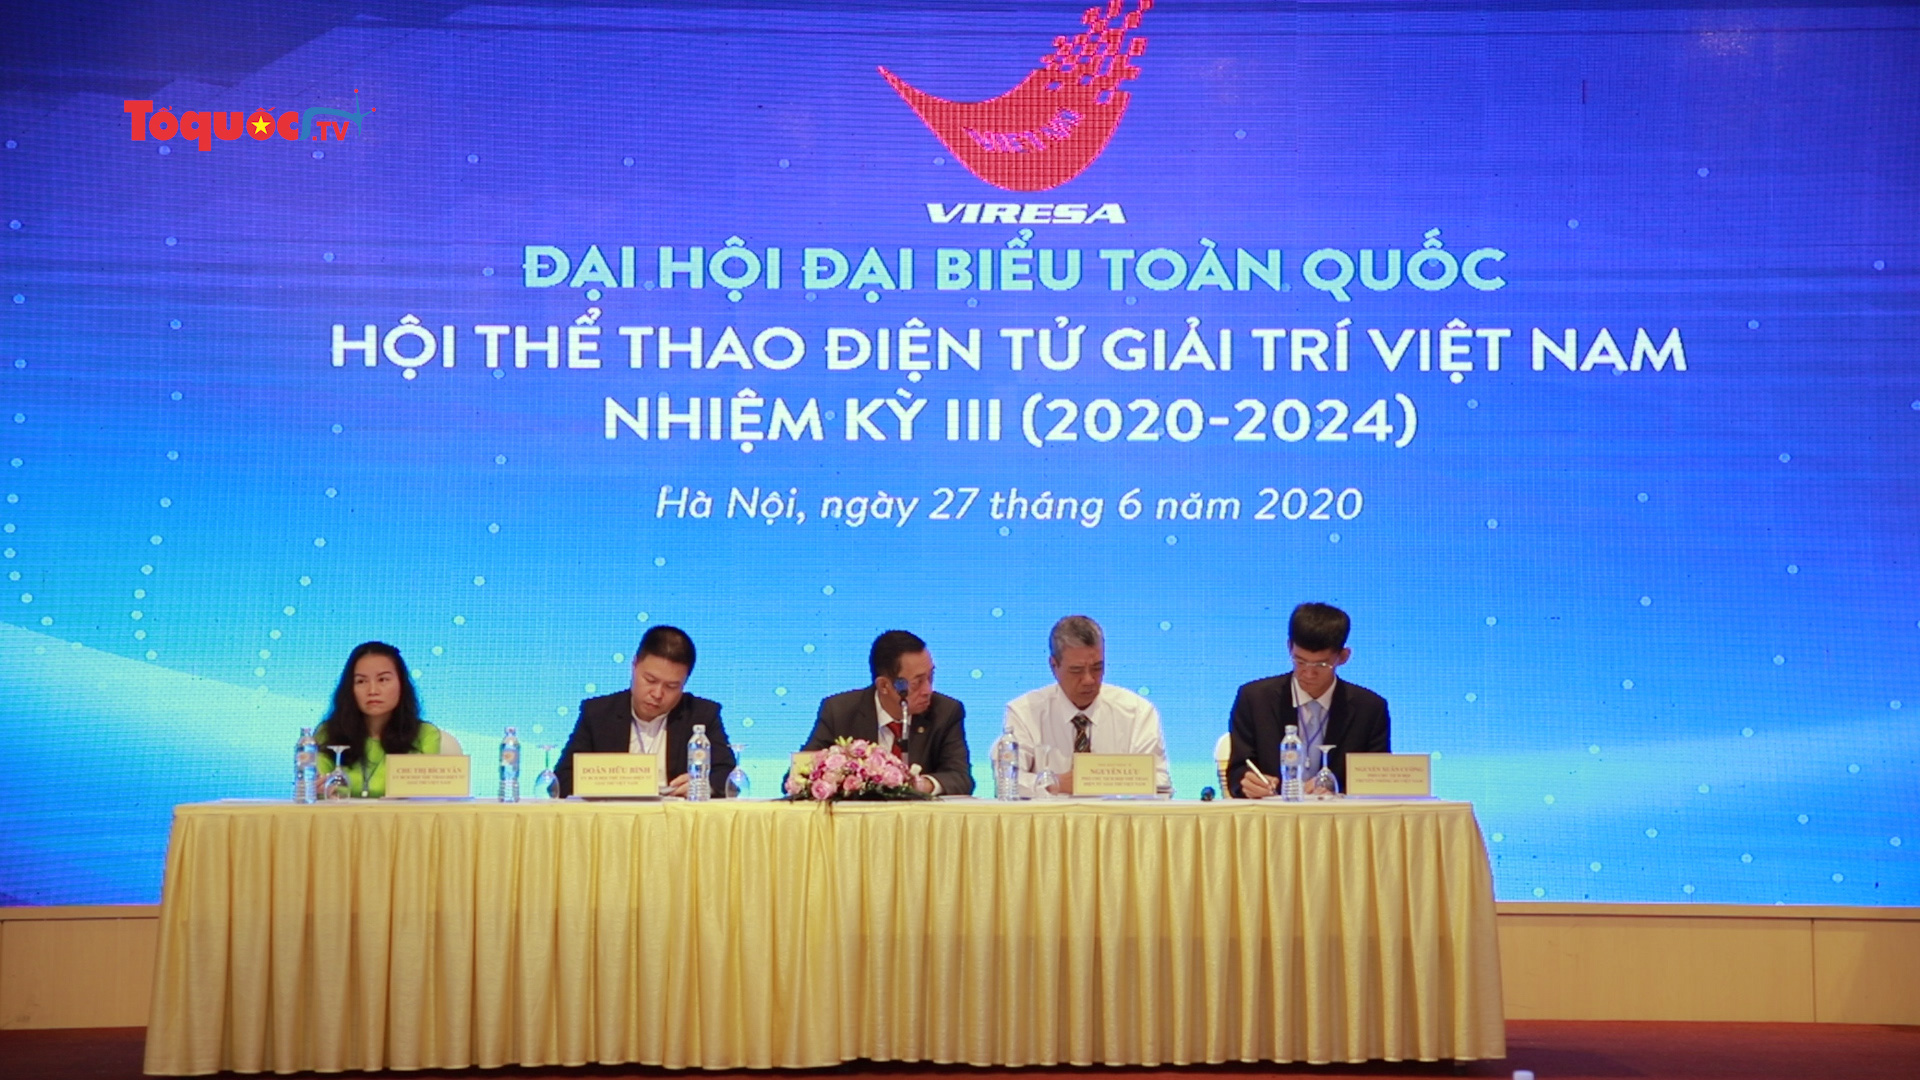 Đại hội đại biểu toàn quốc Hội thể thao điện tử giải trí Việt Nam nhiệm kỳ III (2020-2024)